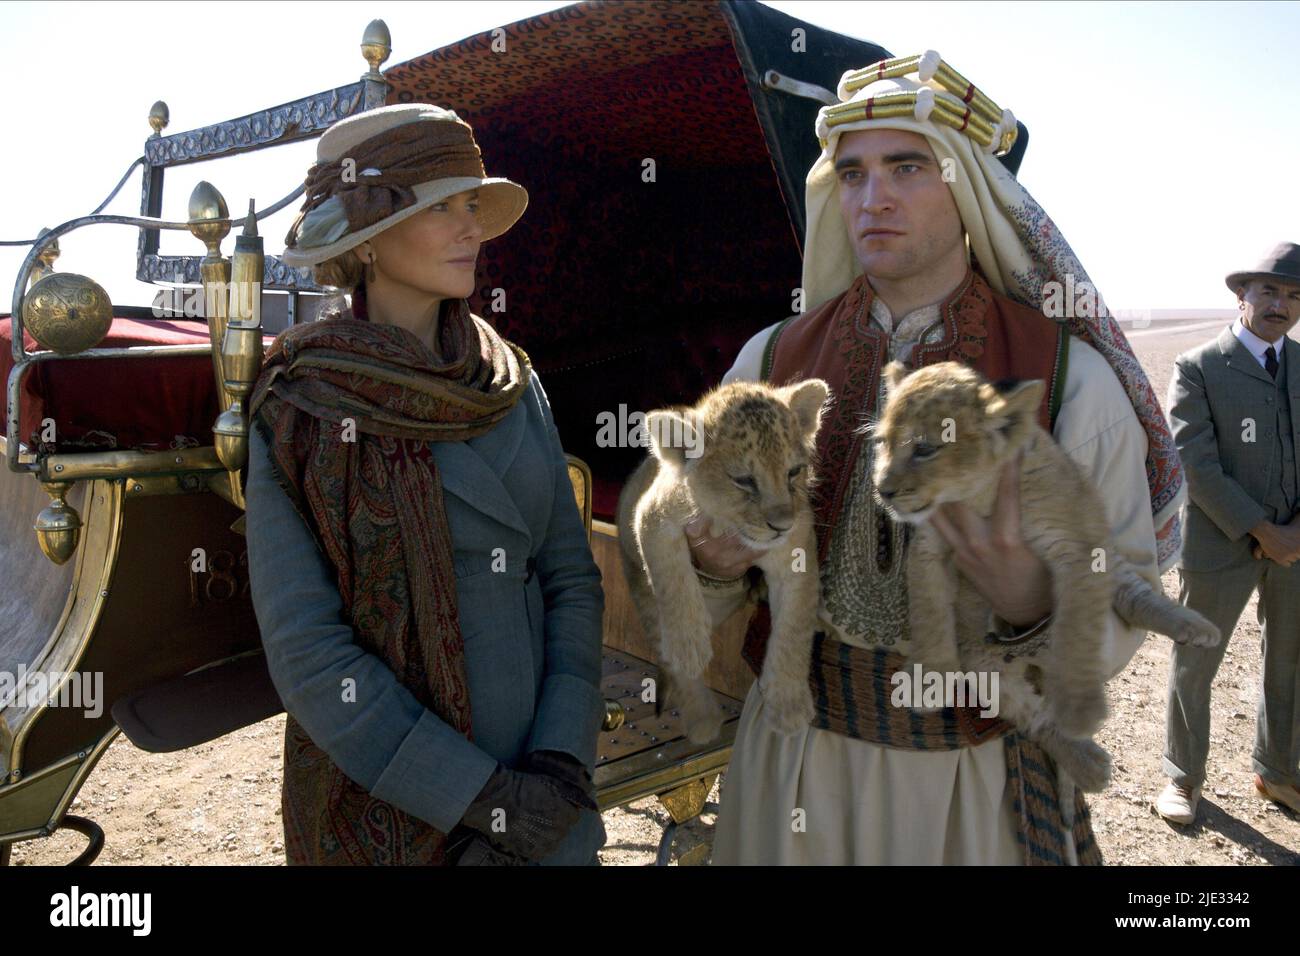 NICOLE KIDMAN, Robert Pattinson, la regina del deserto, 2015 Foto Stock